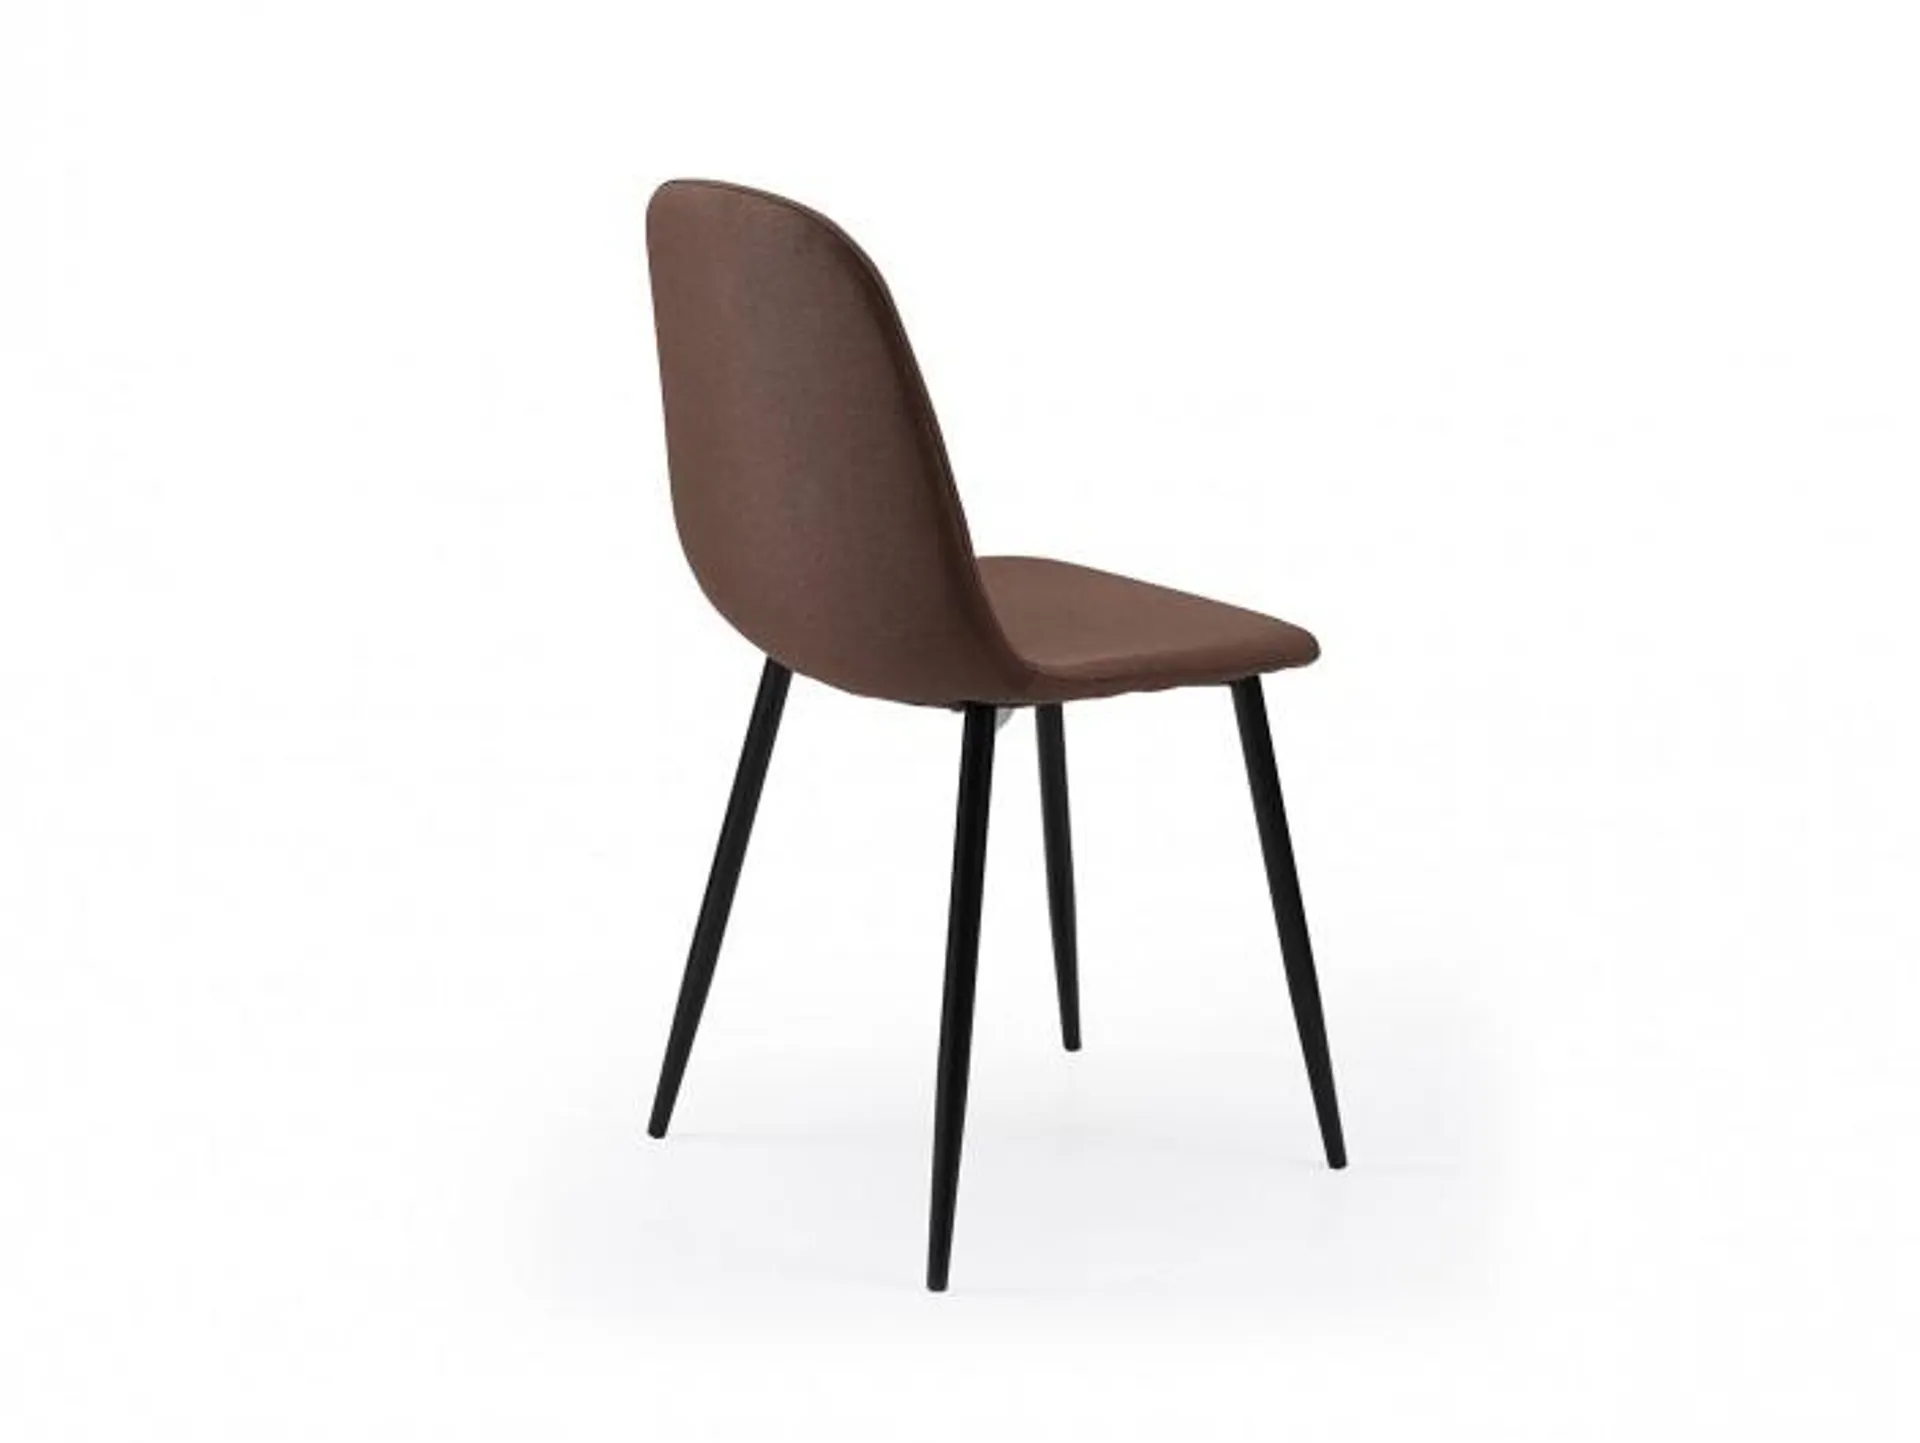 Pack 4 sillas de comedor estilo nórdico tapizado color chocolate